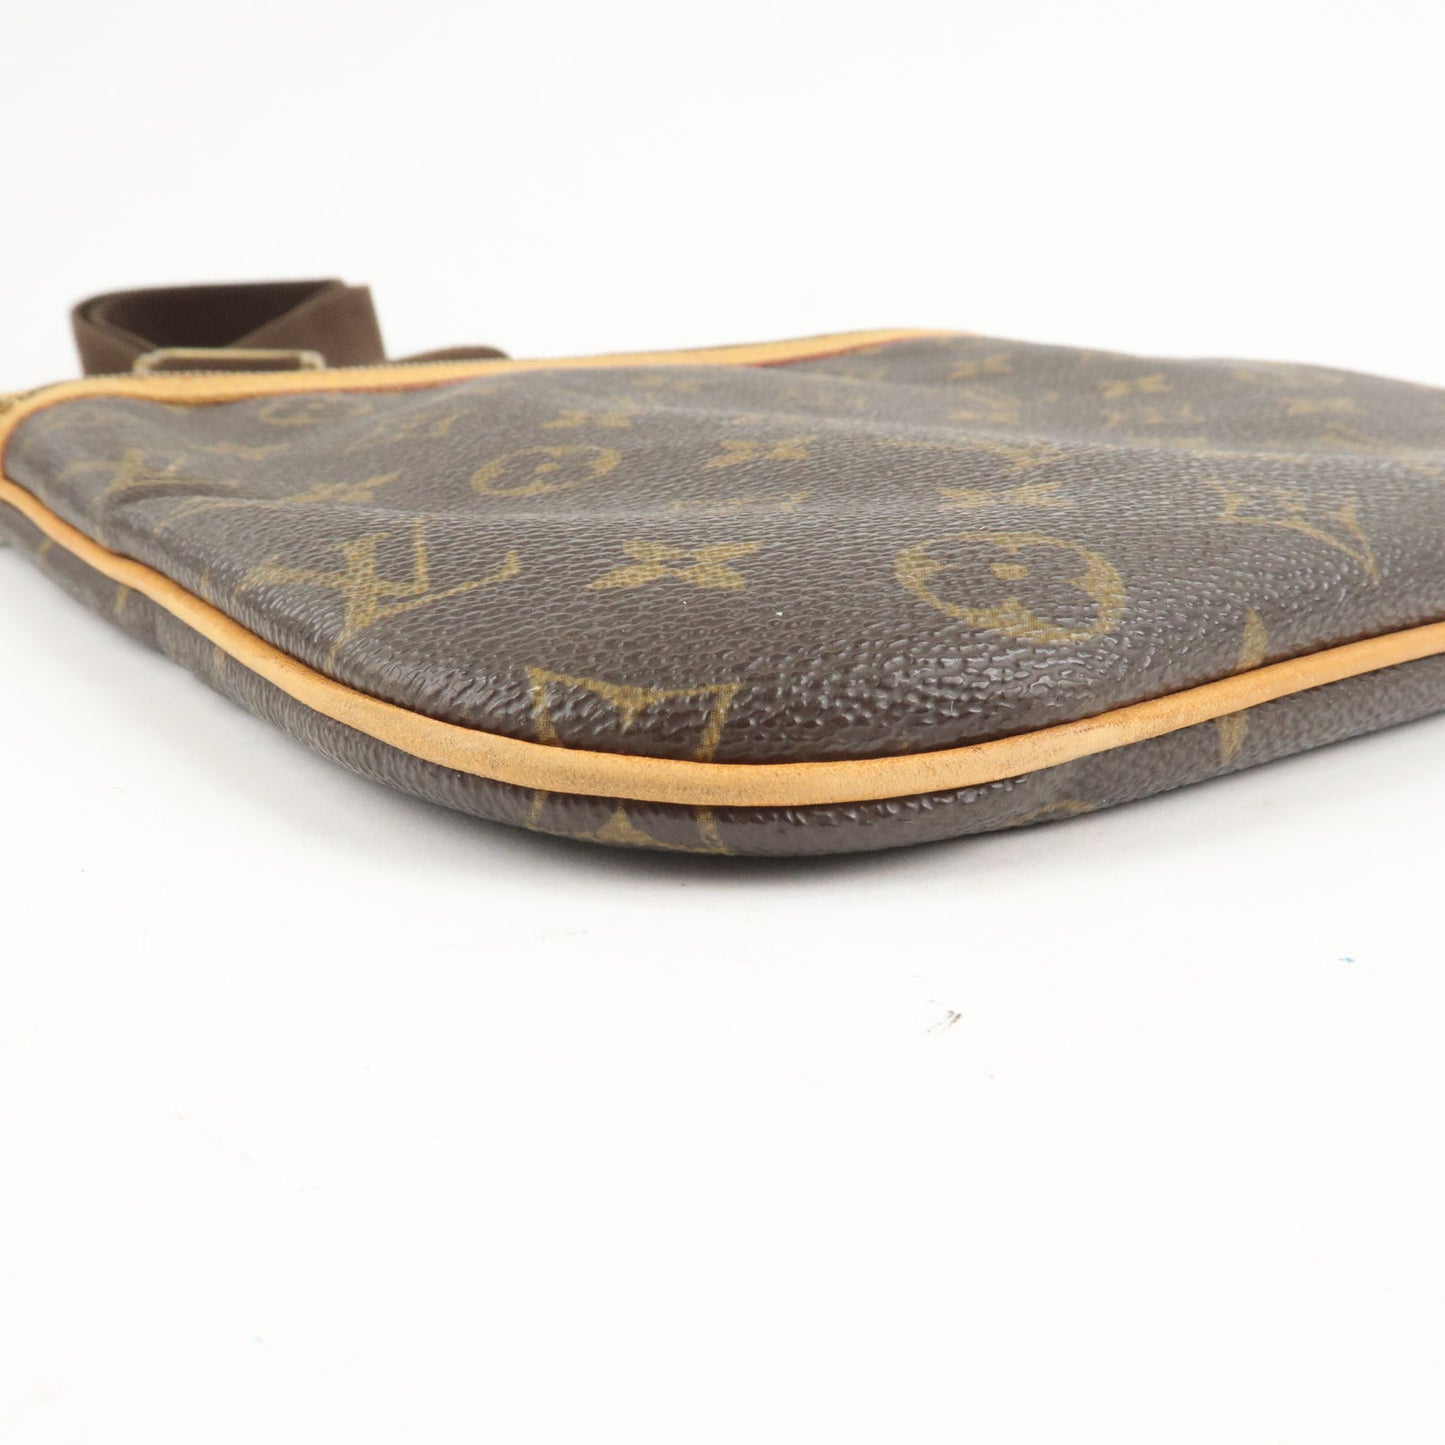 LOUIS VUITTON Pochette Bosphore Shoulder Bag Monogram Leather BN M40044  70MY815